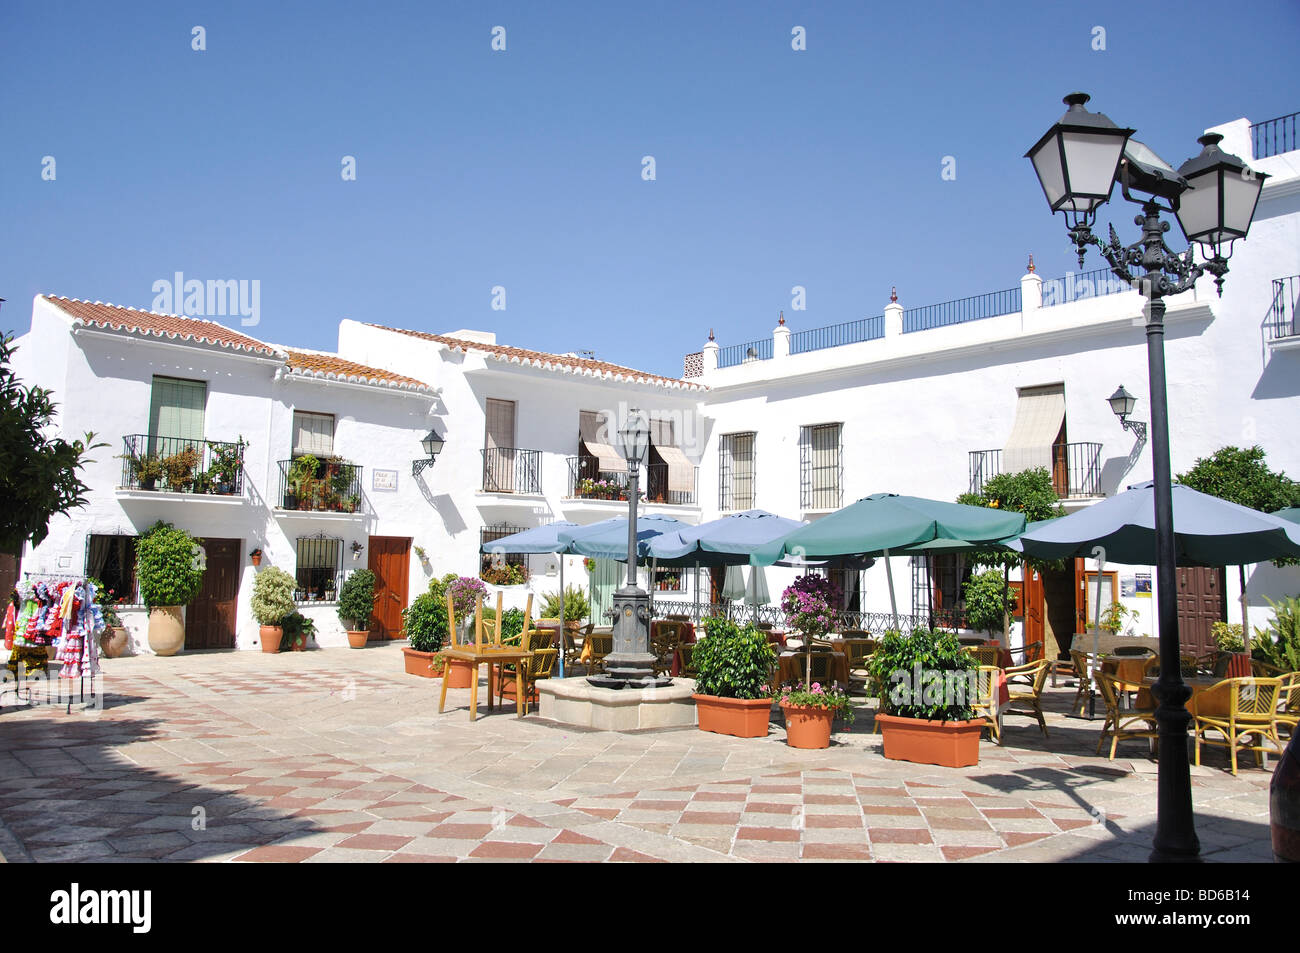 Plaza De La Iglesia, Frigliana, Costa del Sol, Provinz Malaga, Andalusien, Spanien Stockfoto